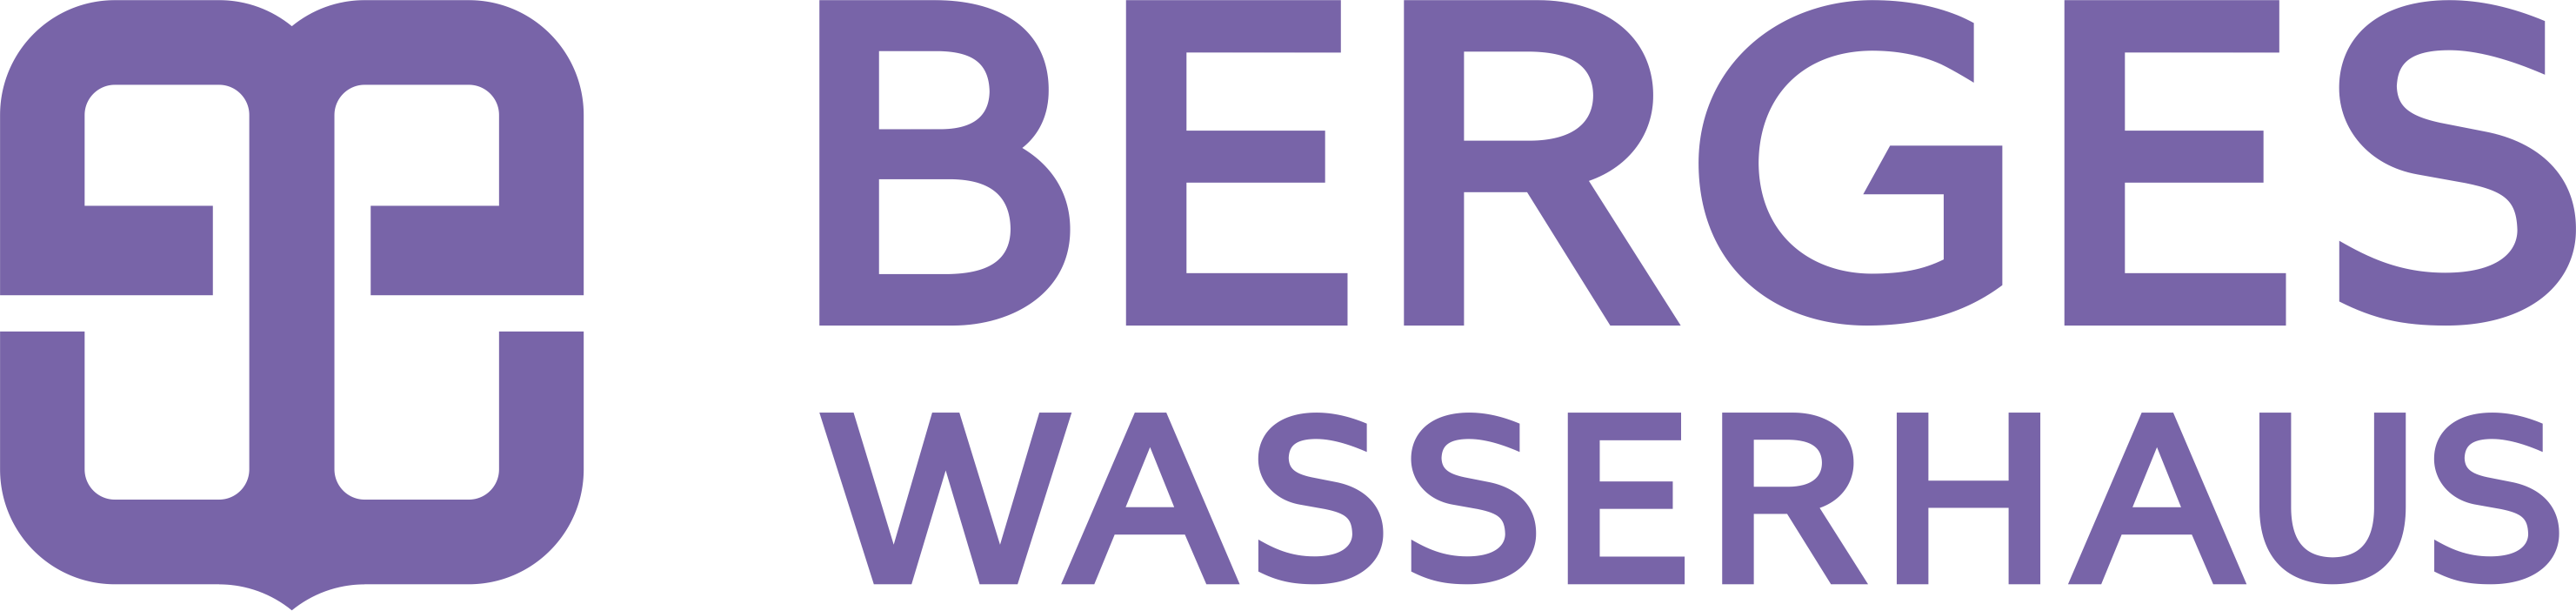 Логотип бренда Berges Wasserhaus